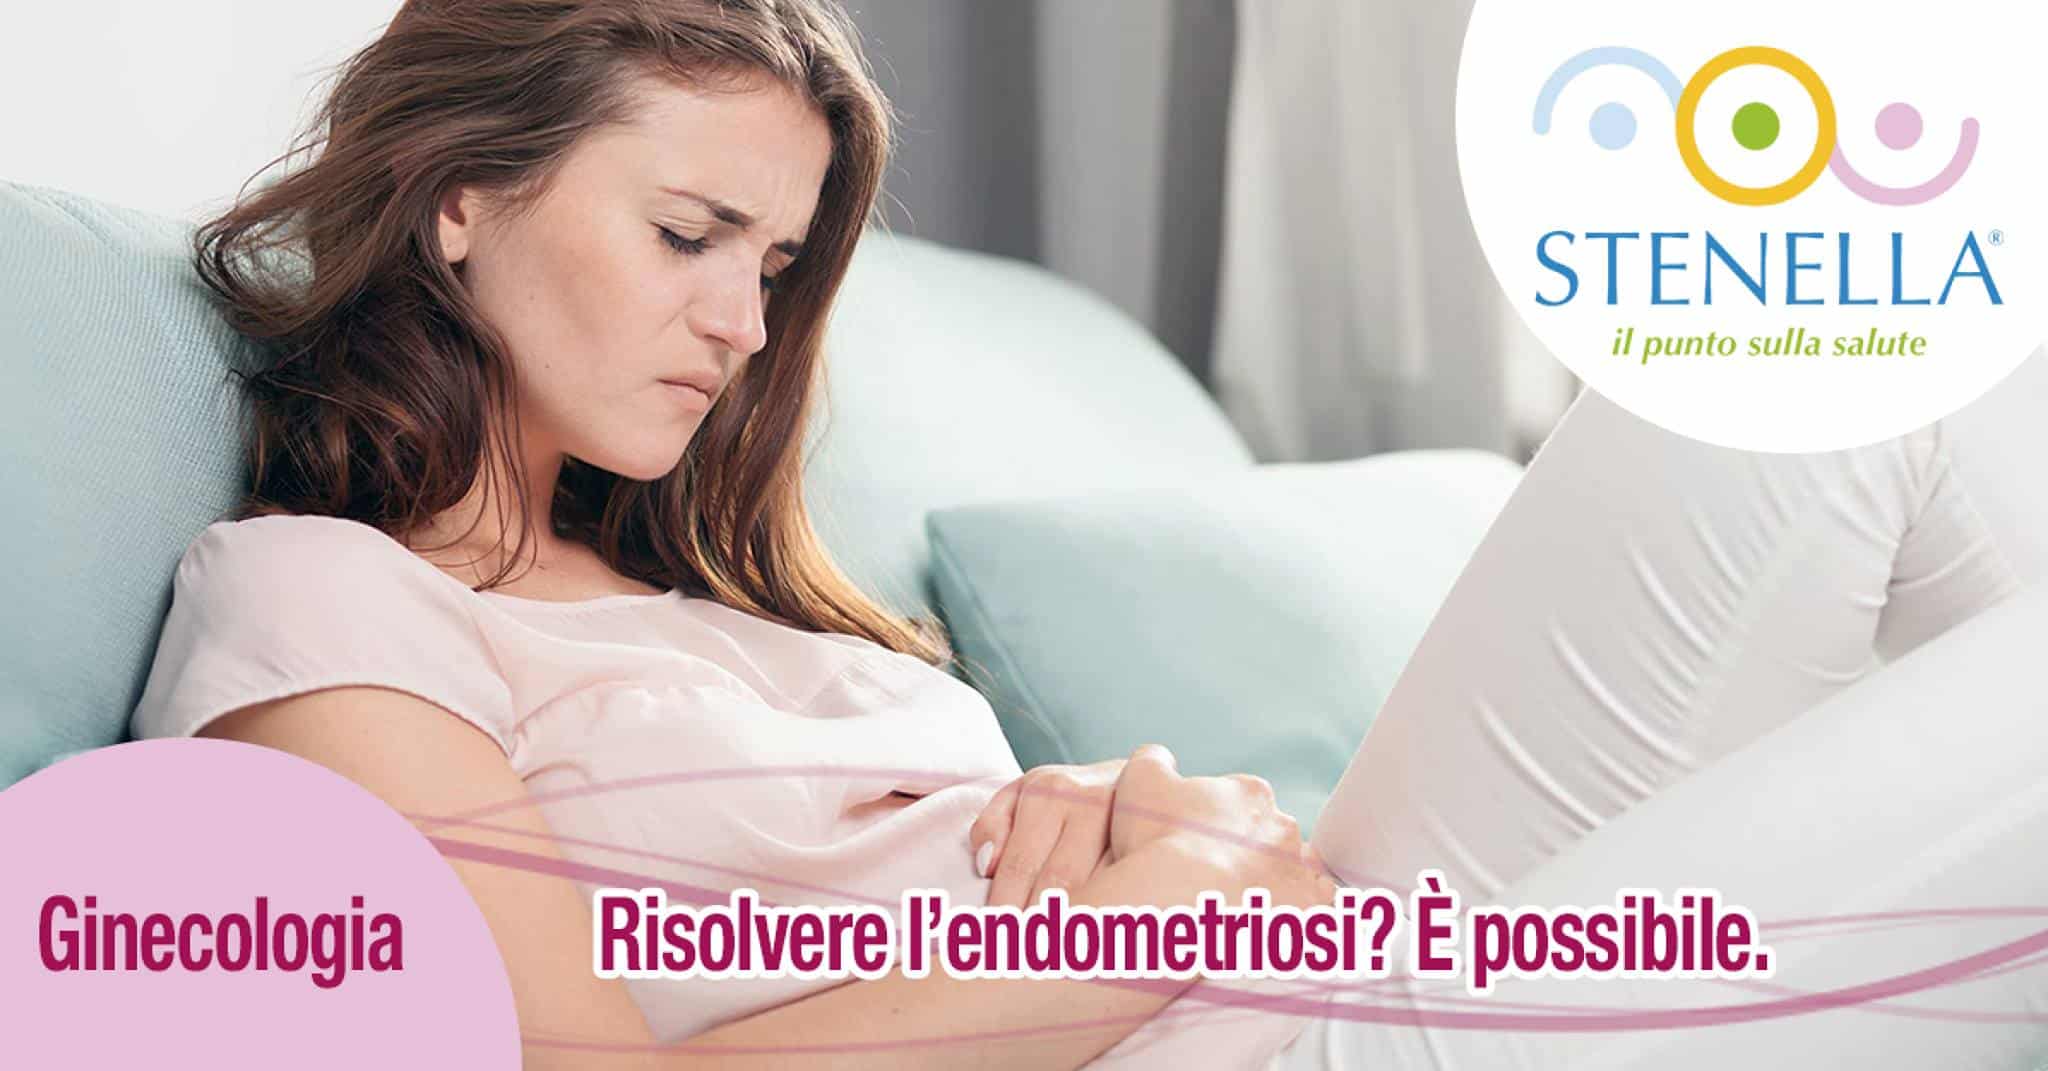 #endometriosi #ginecologia #ginecologo #ianieri #manuelmariaianieri#stenella #poliambulatoriostenella #centromedico #salute #endometrio #utero